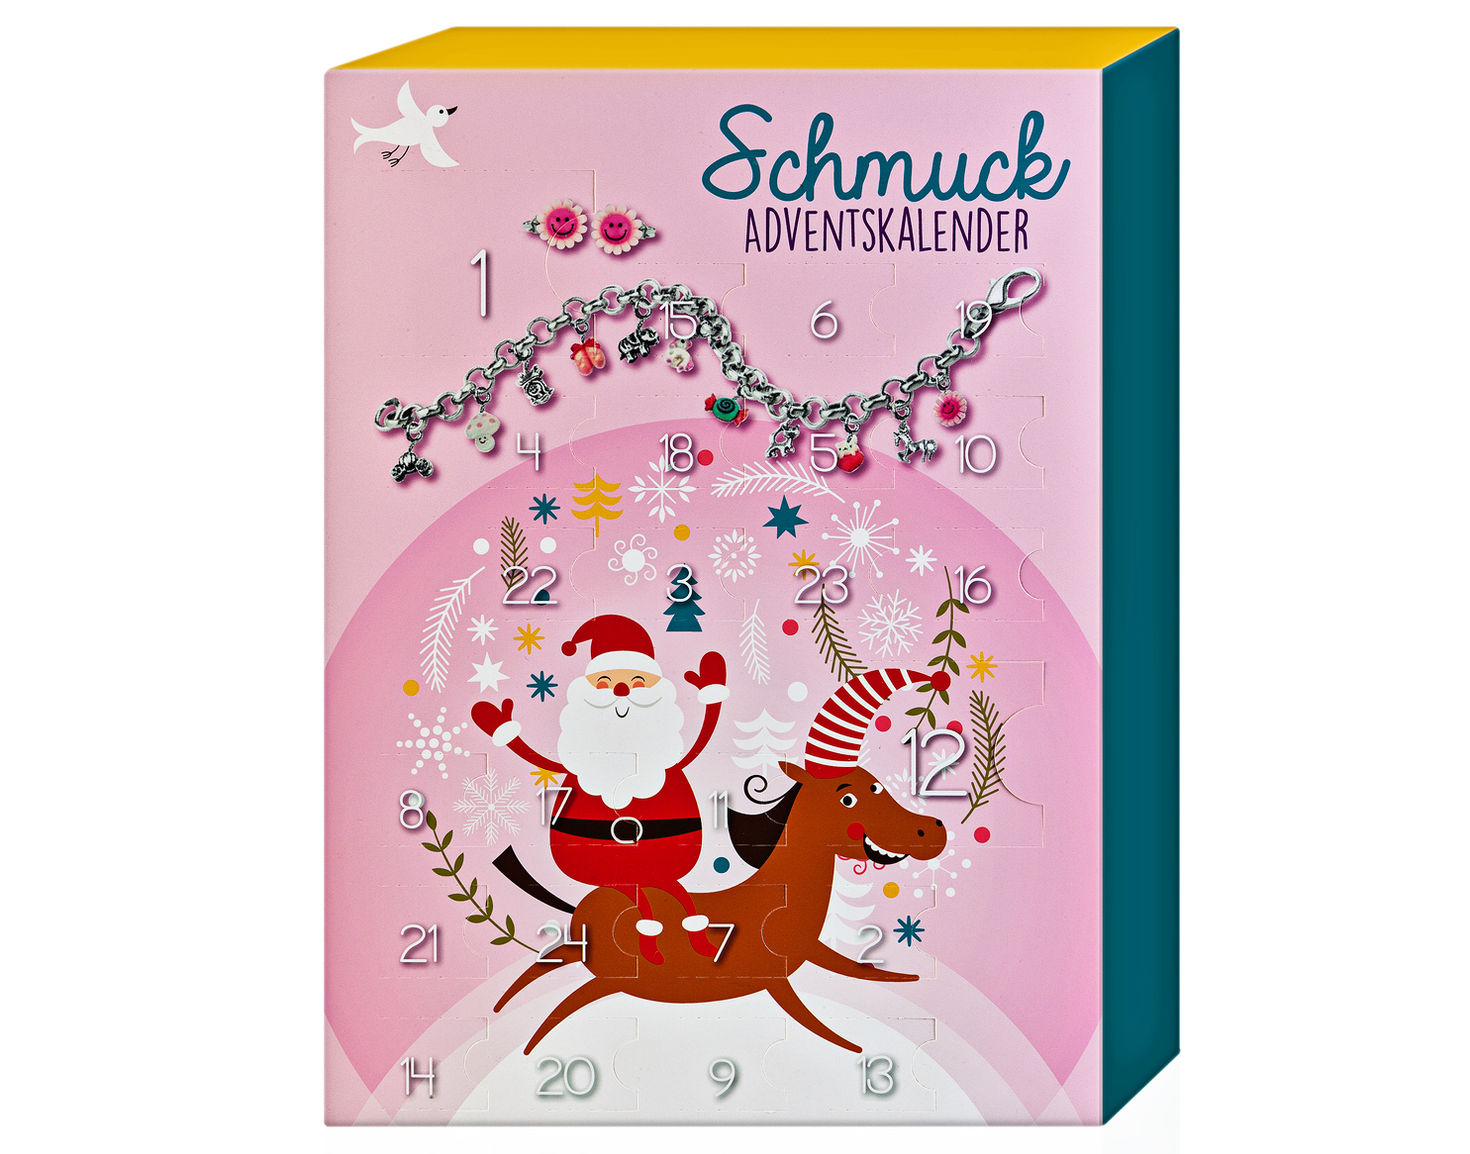 Schmuck Adventskalender für Kinder - Kalender bei Weltbild.ch